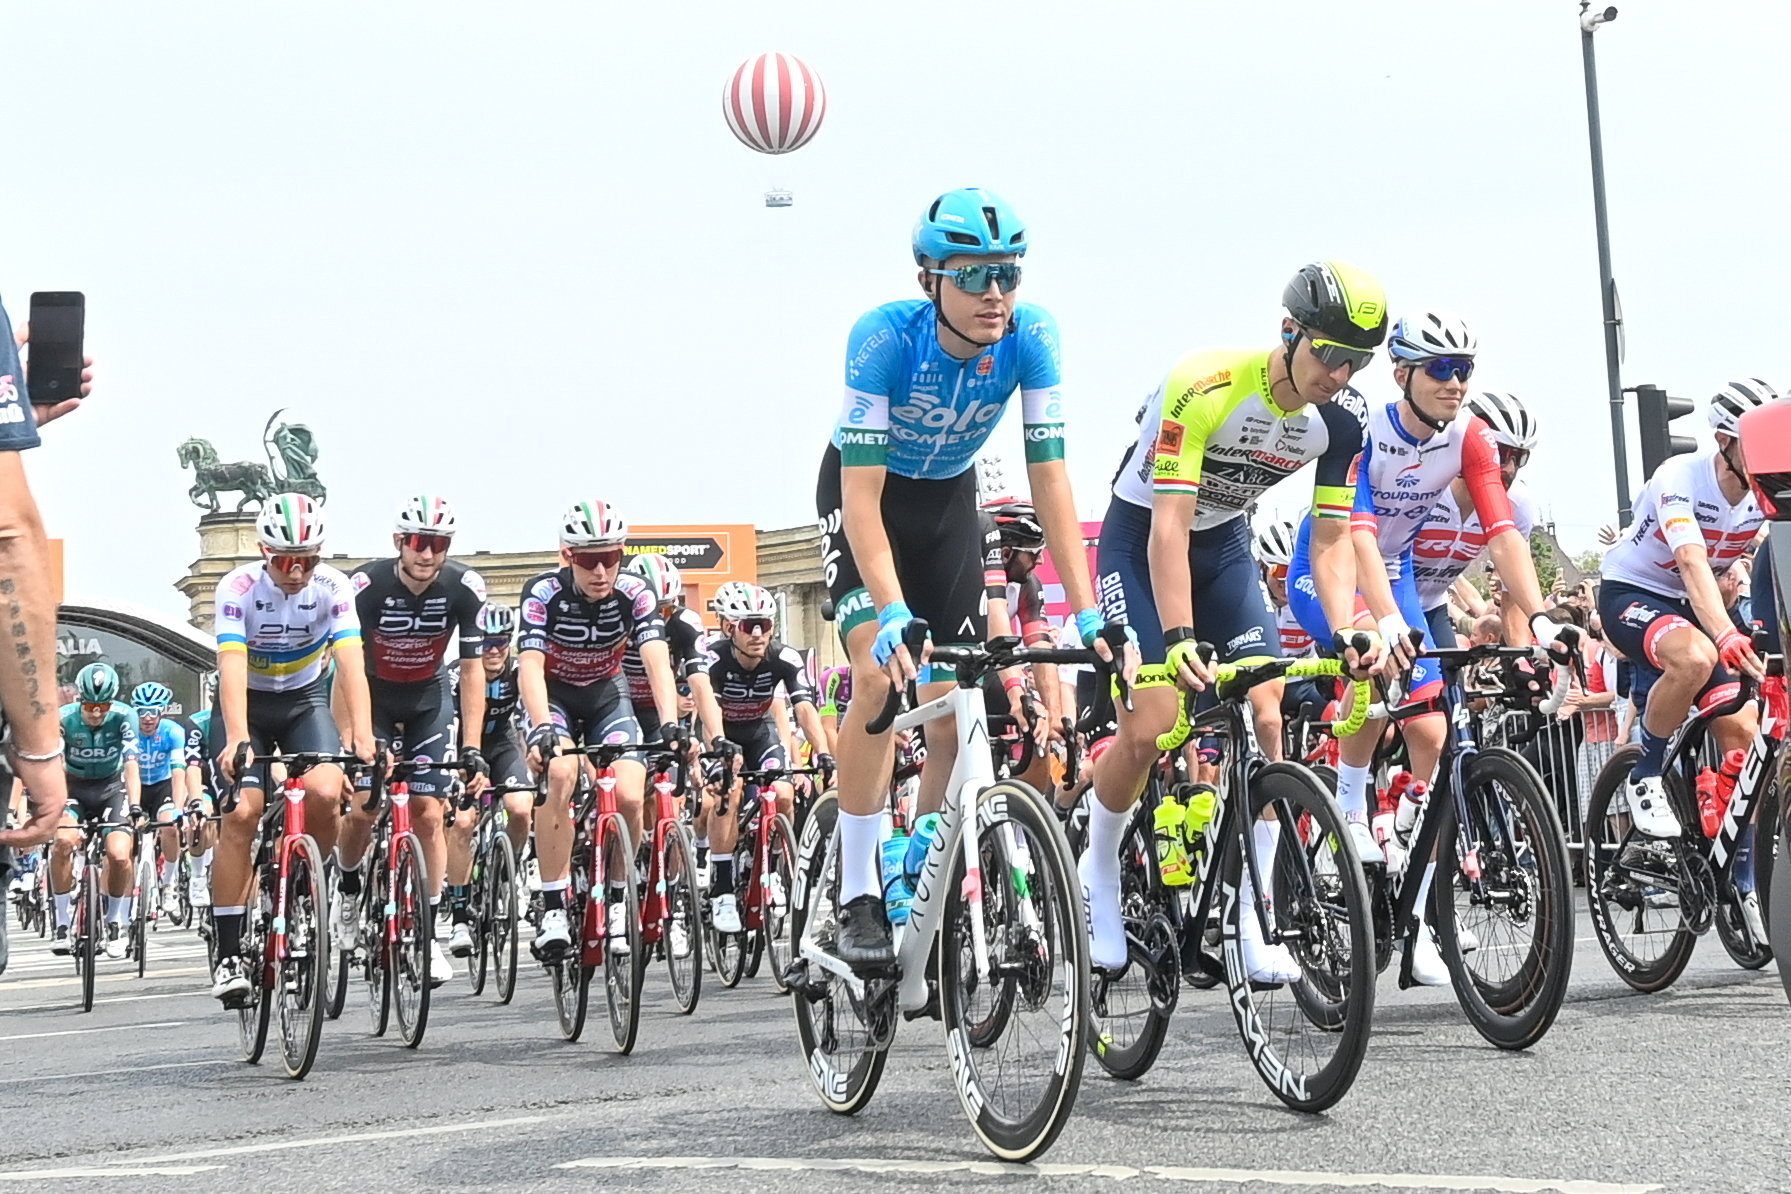 Giro d'Italia: Hier sind die besten Momente der ungarischen Etappen - Fotos!